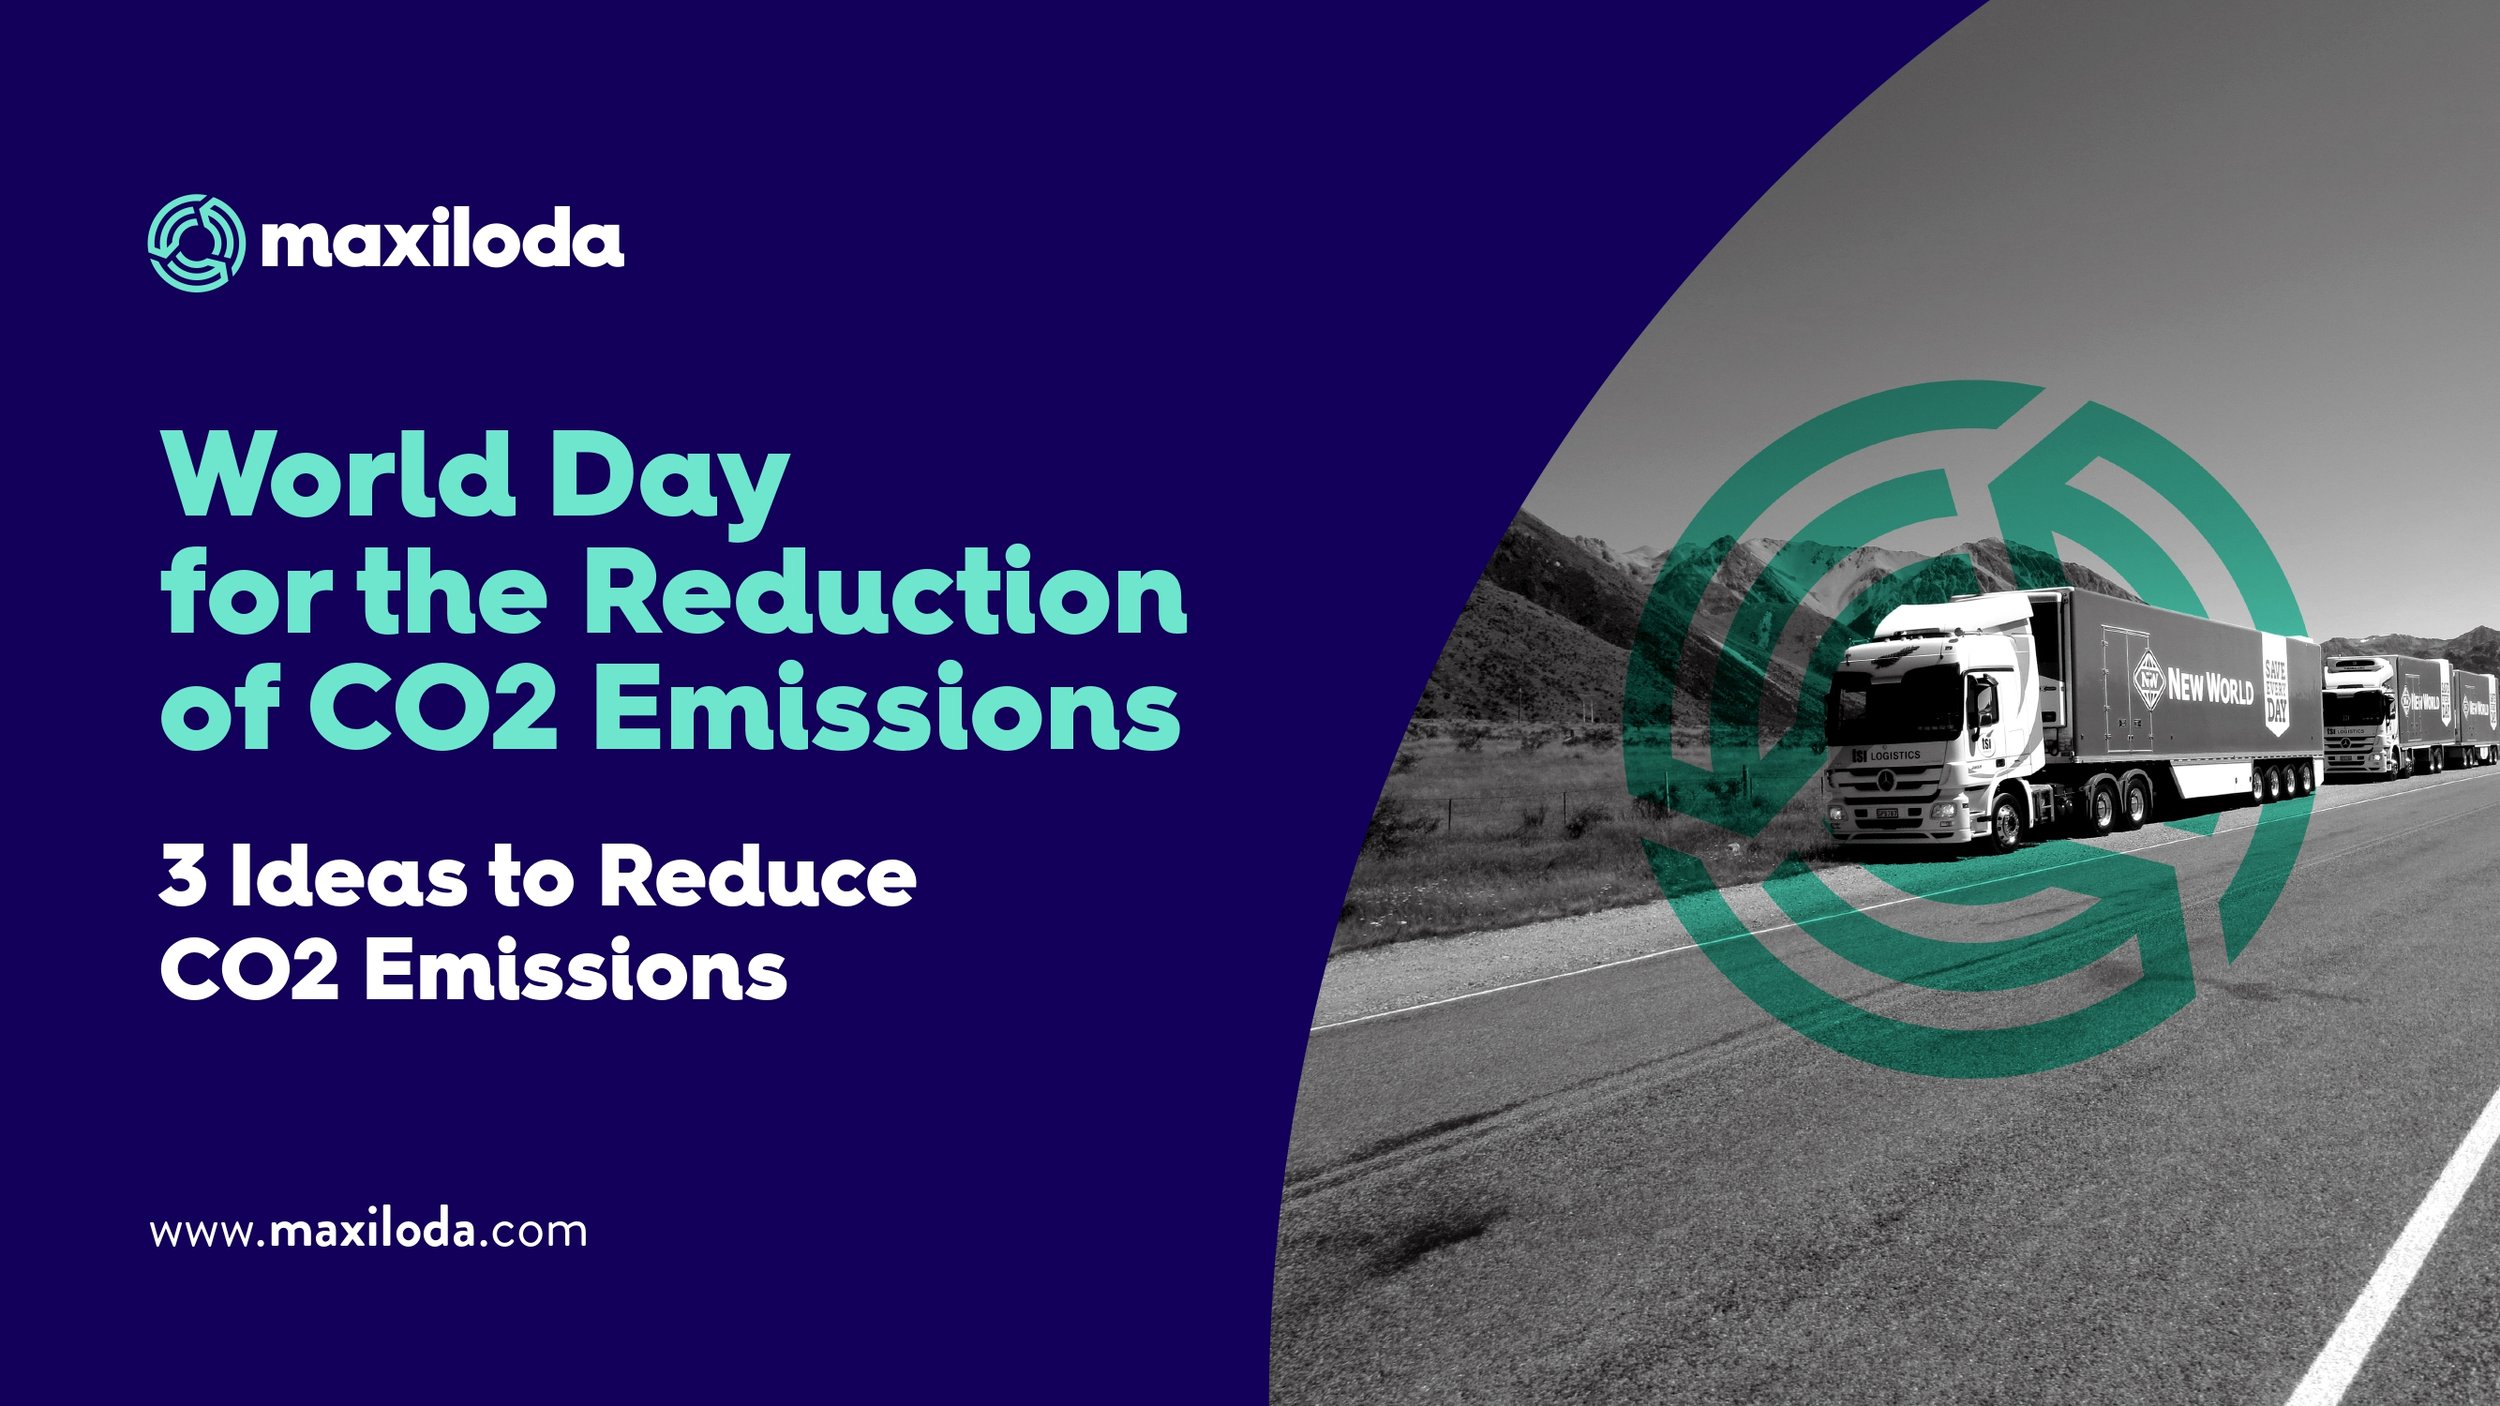 28/01 Día Internacional para la Reducción de las Emisiones de CO2 - 3 ideas para reducir las emisiones de CO2